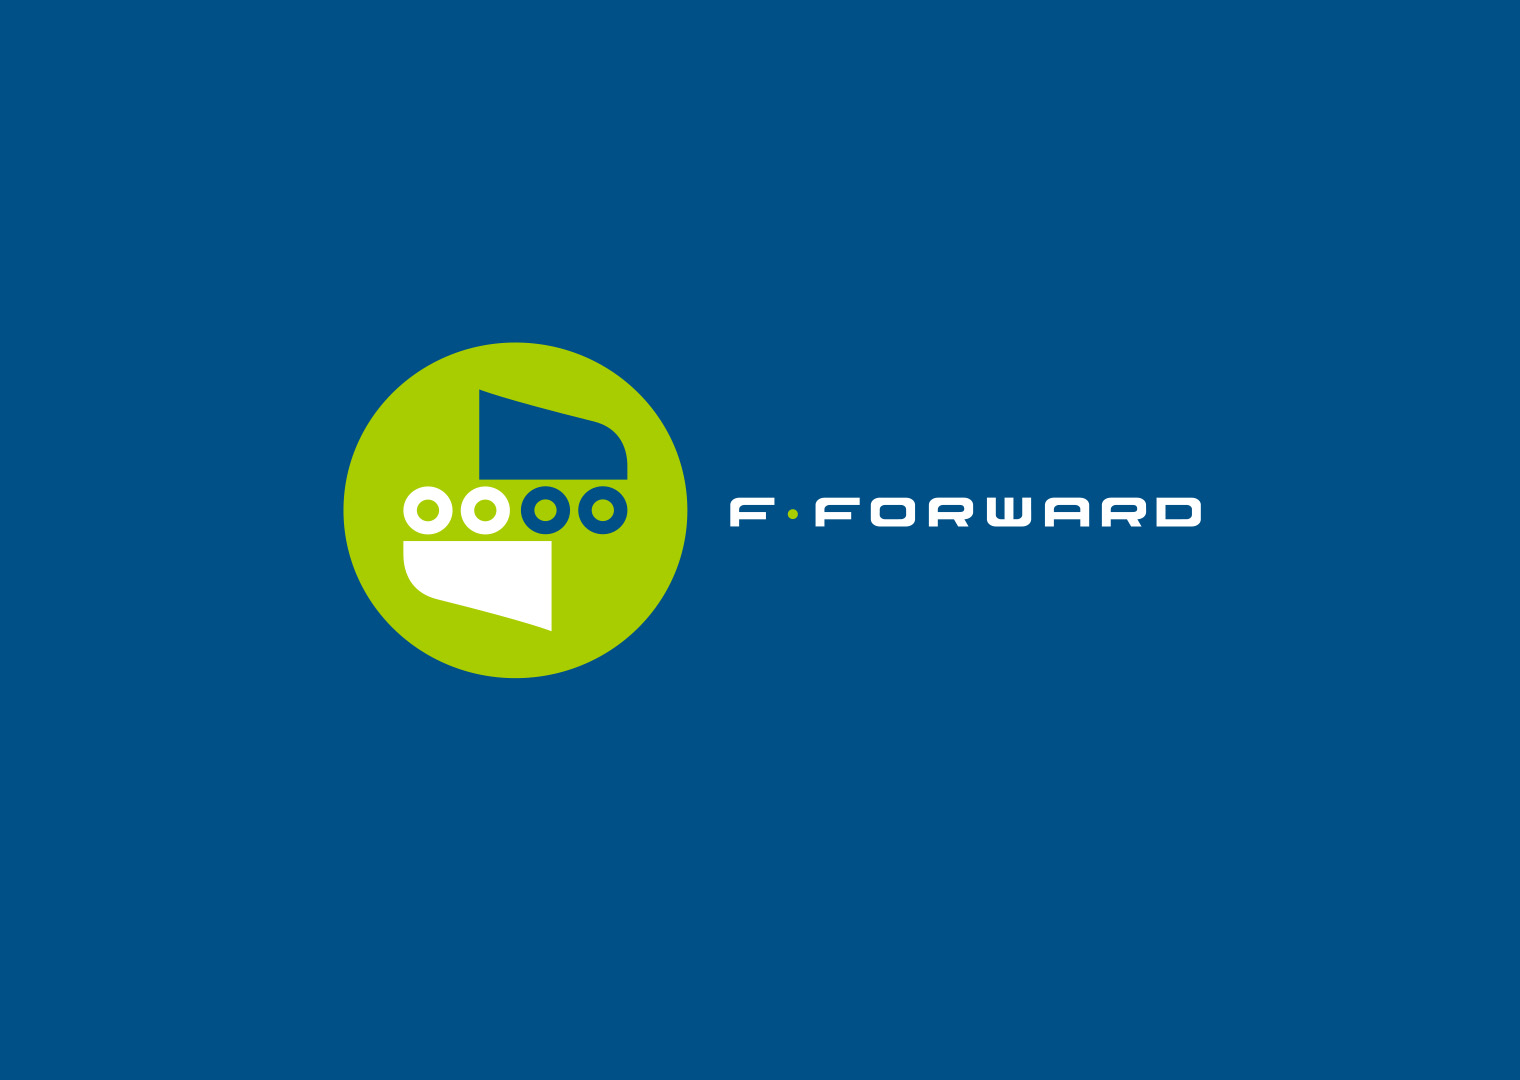 F-forward logo